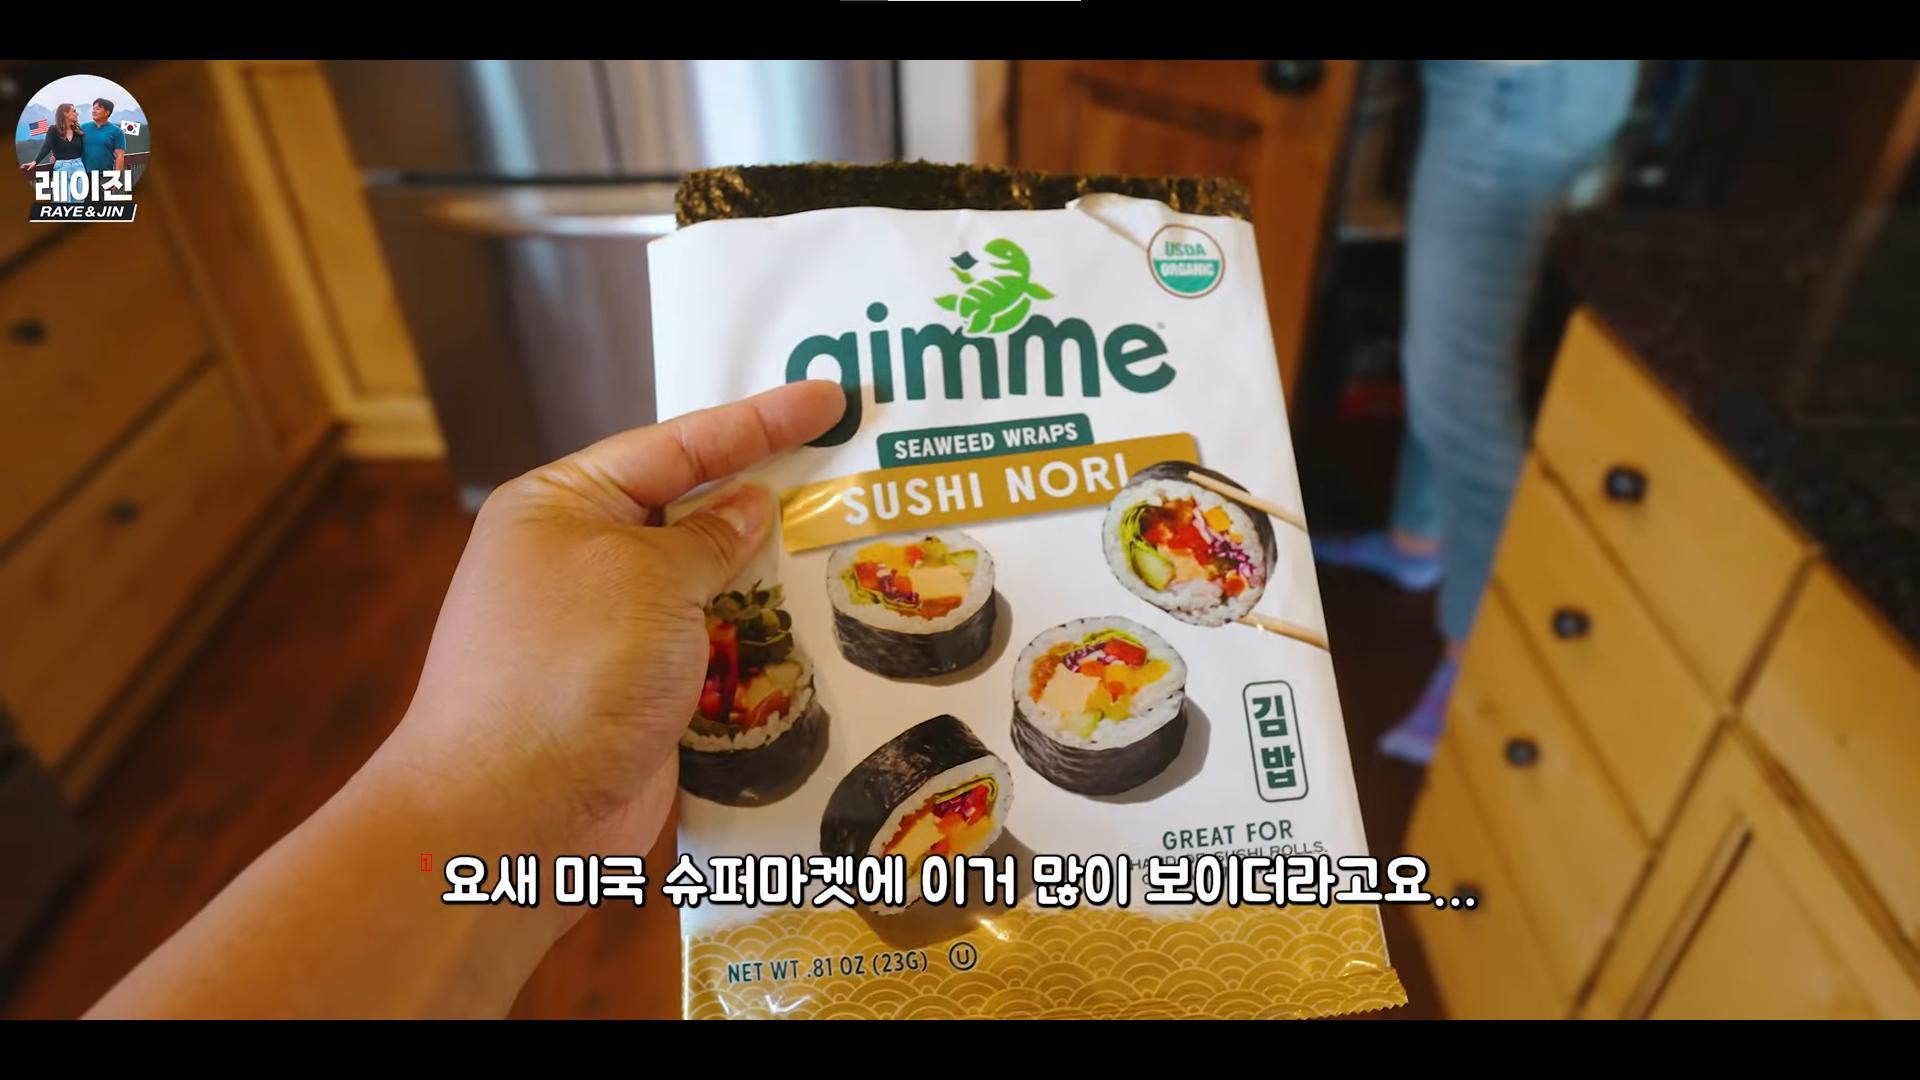 のり巻き用海苔を寿司ノリとして米国に輸出する韓国メーカー